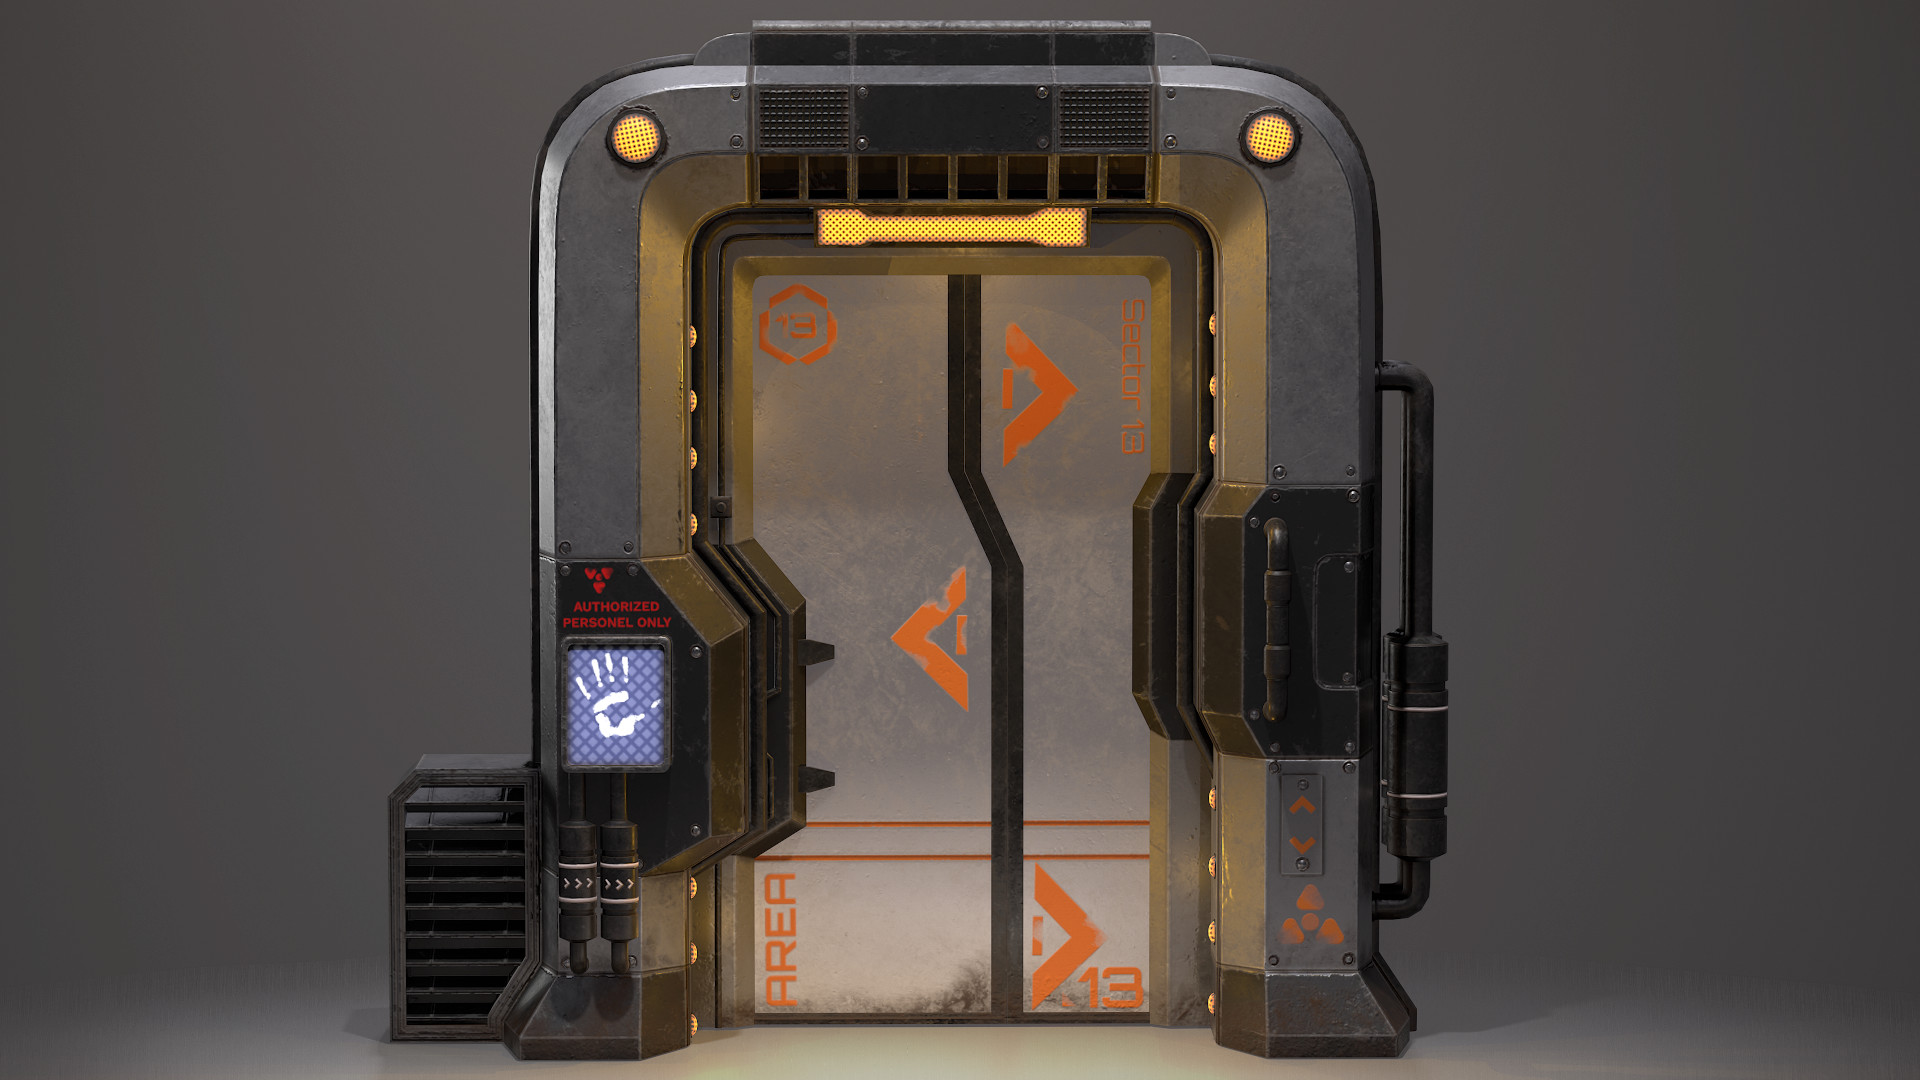 Sci-Fi Door Background